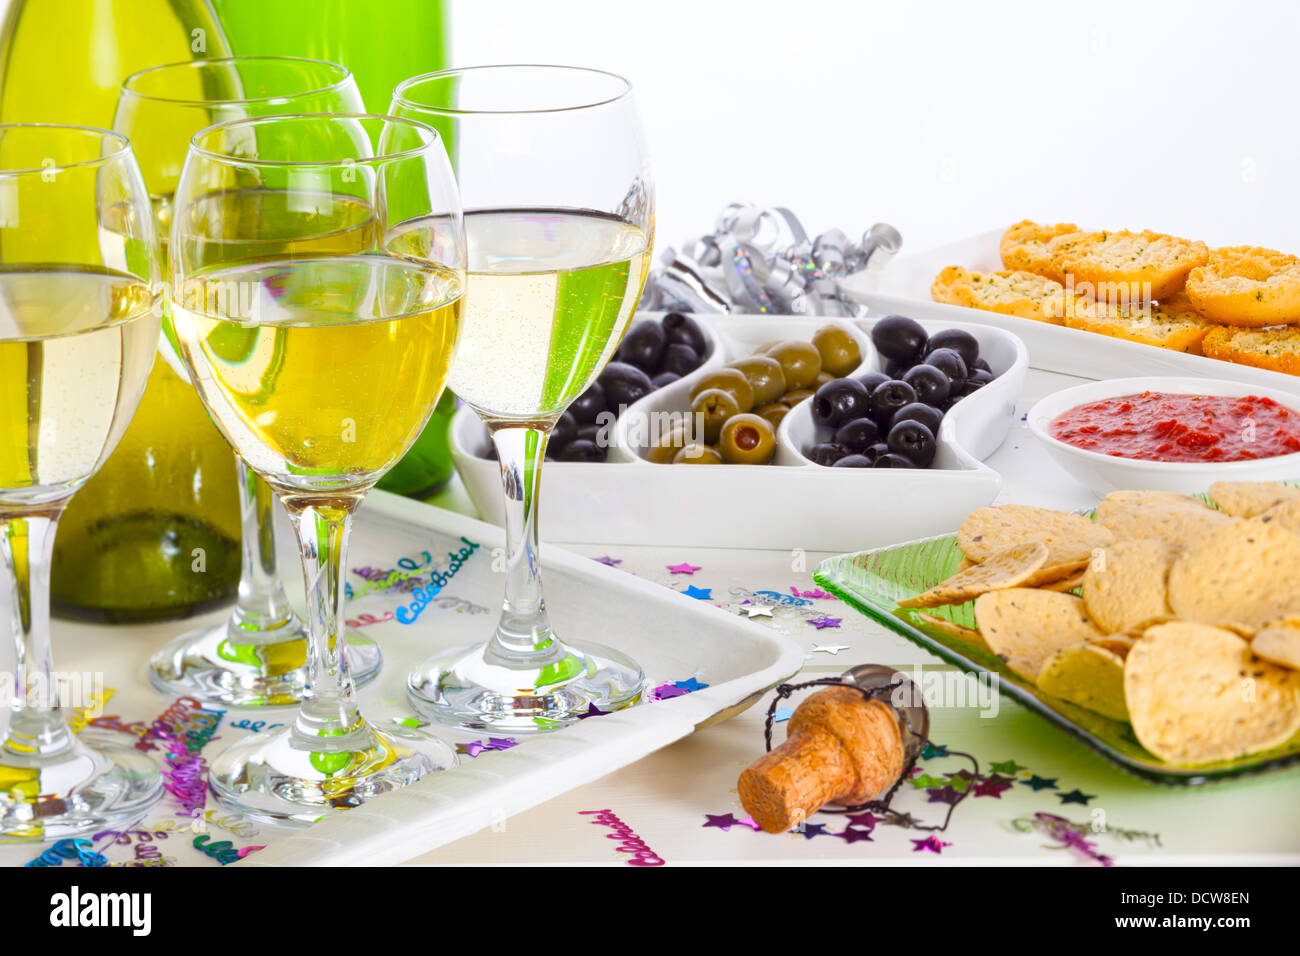 L'alimentation et du vin sur une table de buffet - l'alimentation et du vin sur une table de buffet, célébration de l'espace de copie. Banque D'Images